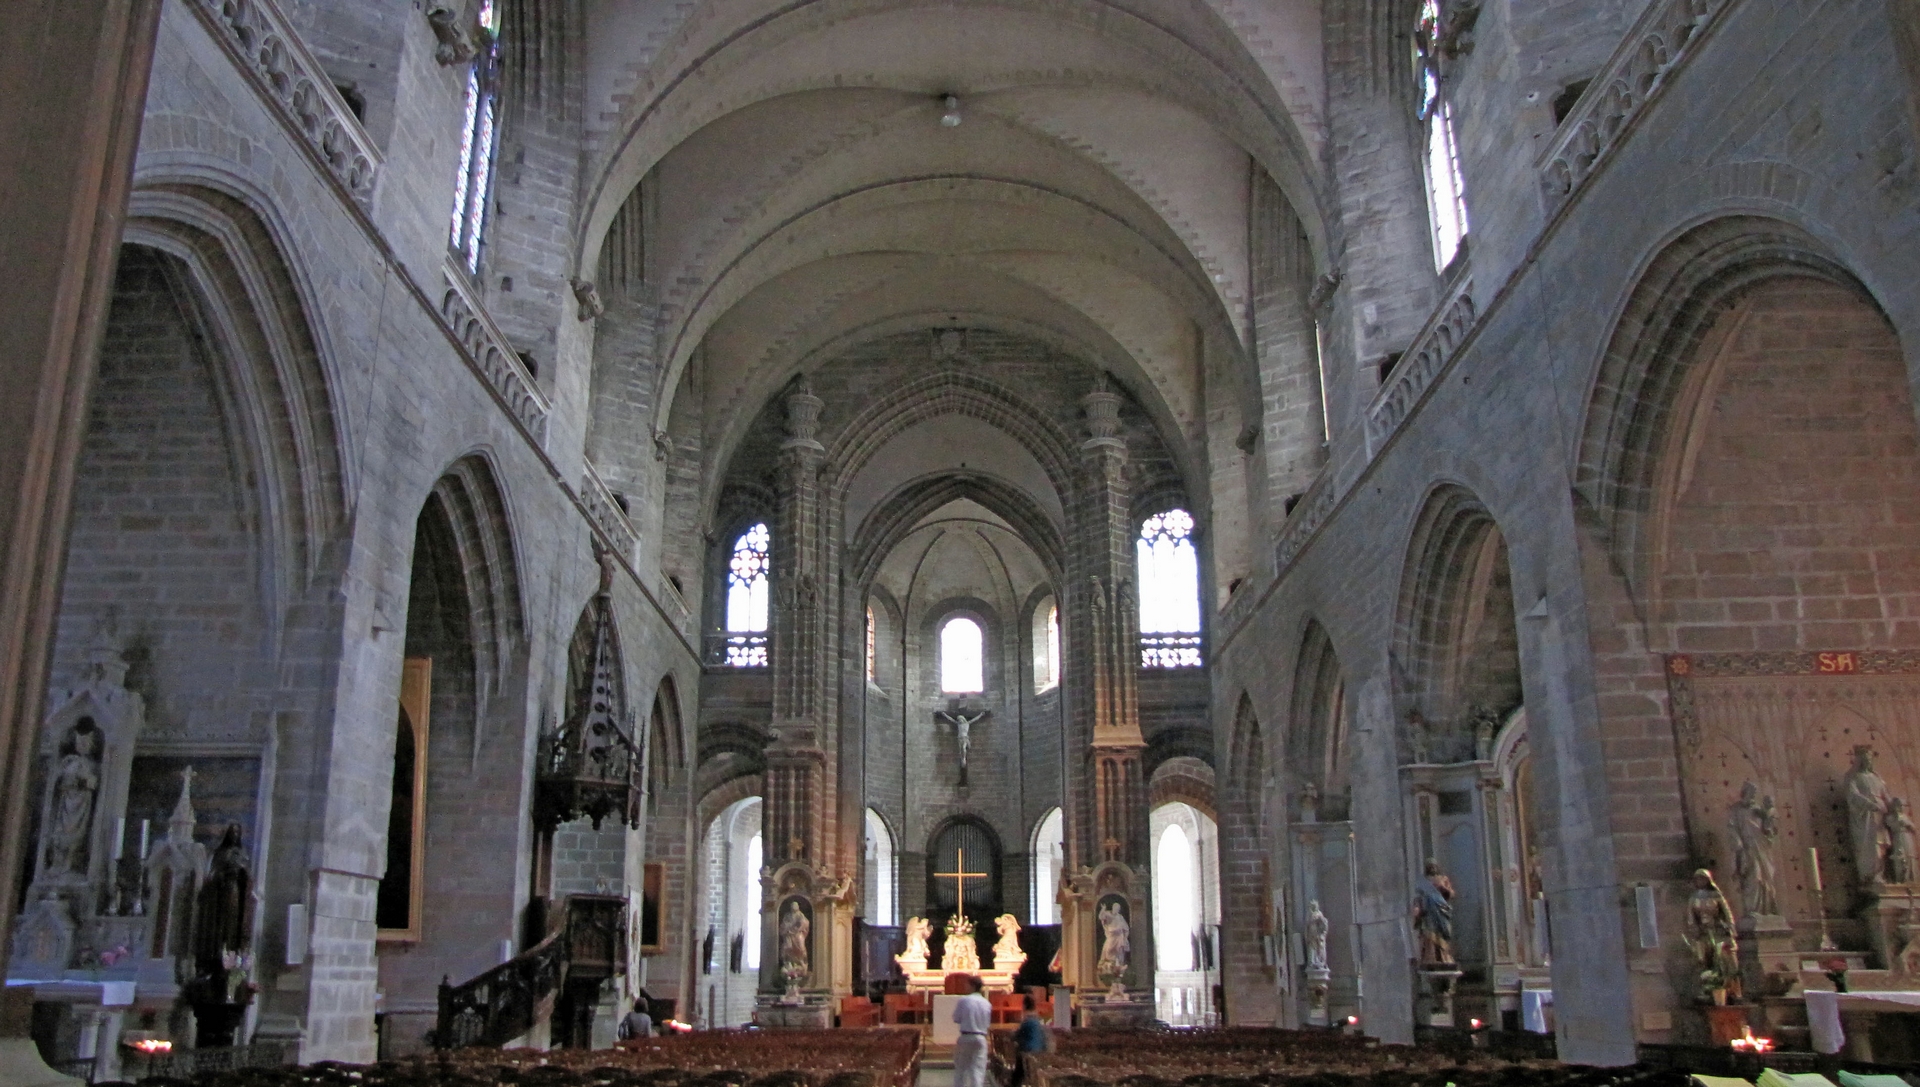 La cathédrale Saint-Pierre de Vannes dans le Morbihan | wikimedia commons julien1978 CC-BY-SA-3.0